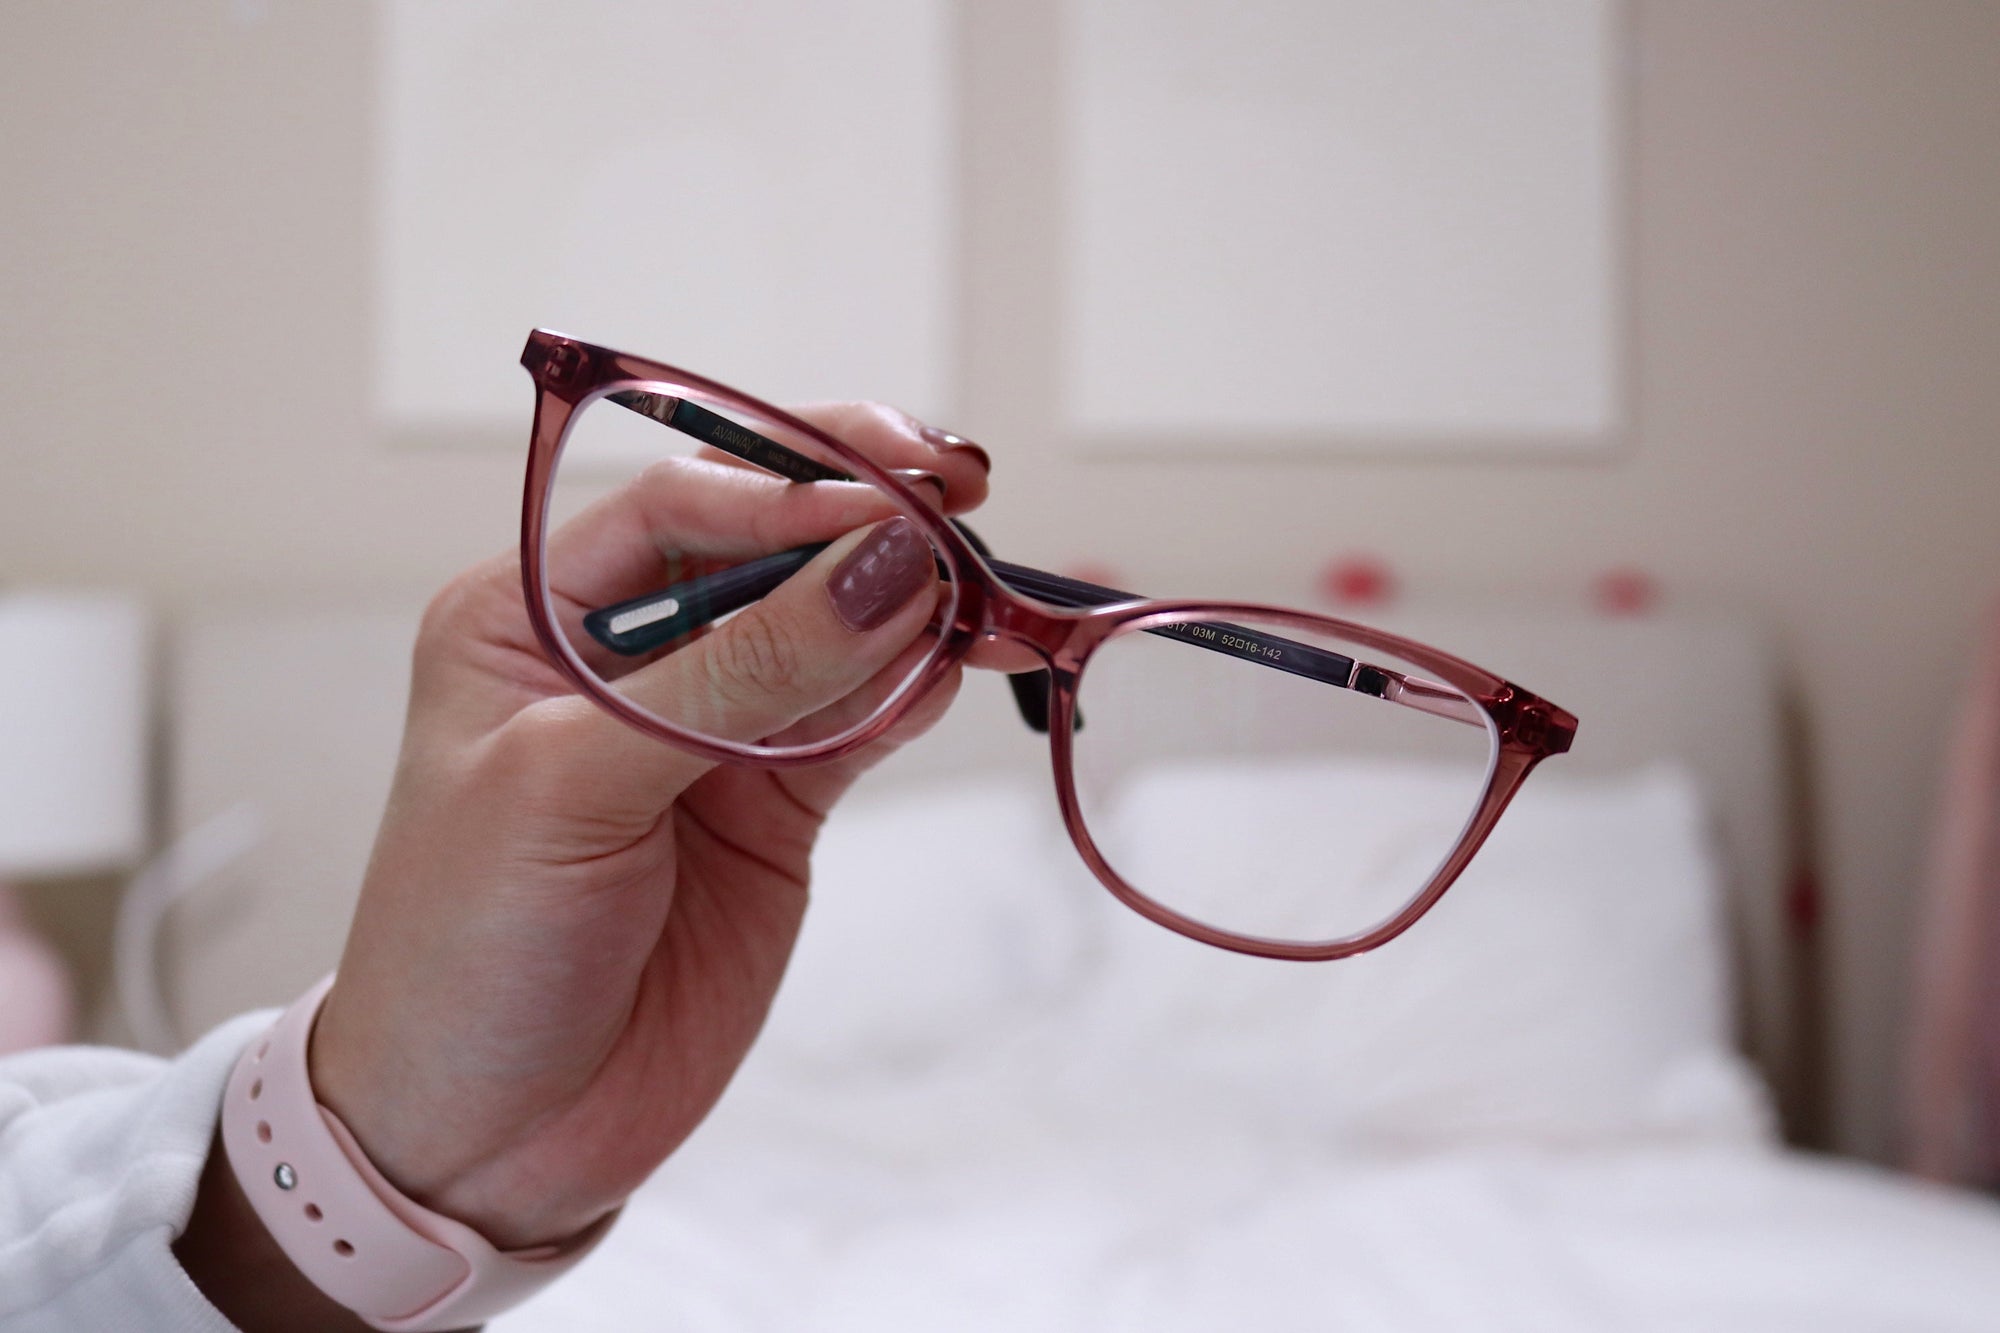 Does Blue Light Blocking Glasses Work? | KOALAEYE OPTICAL